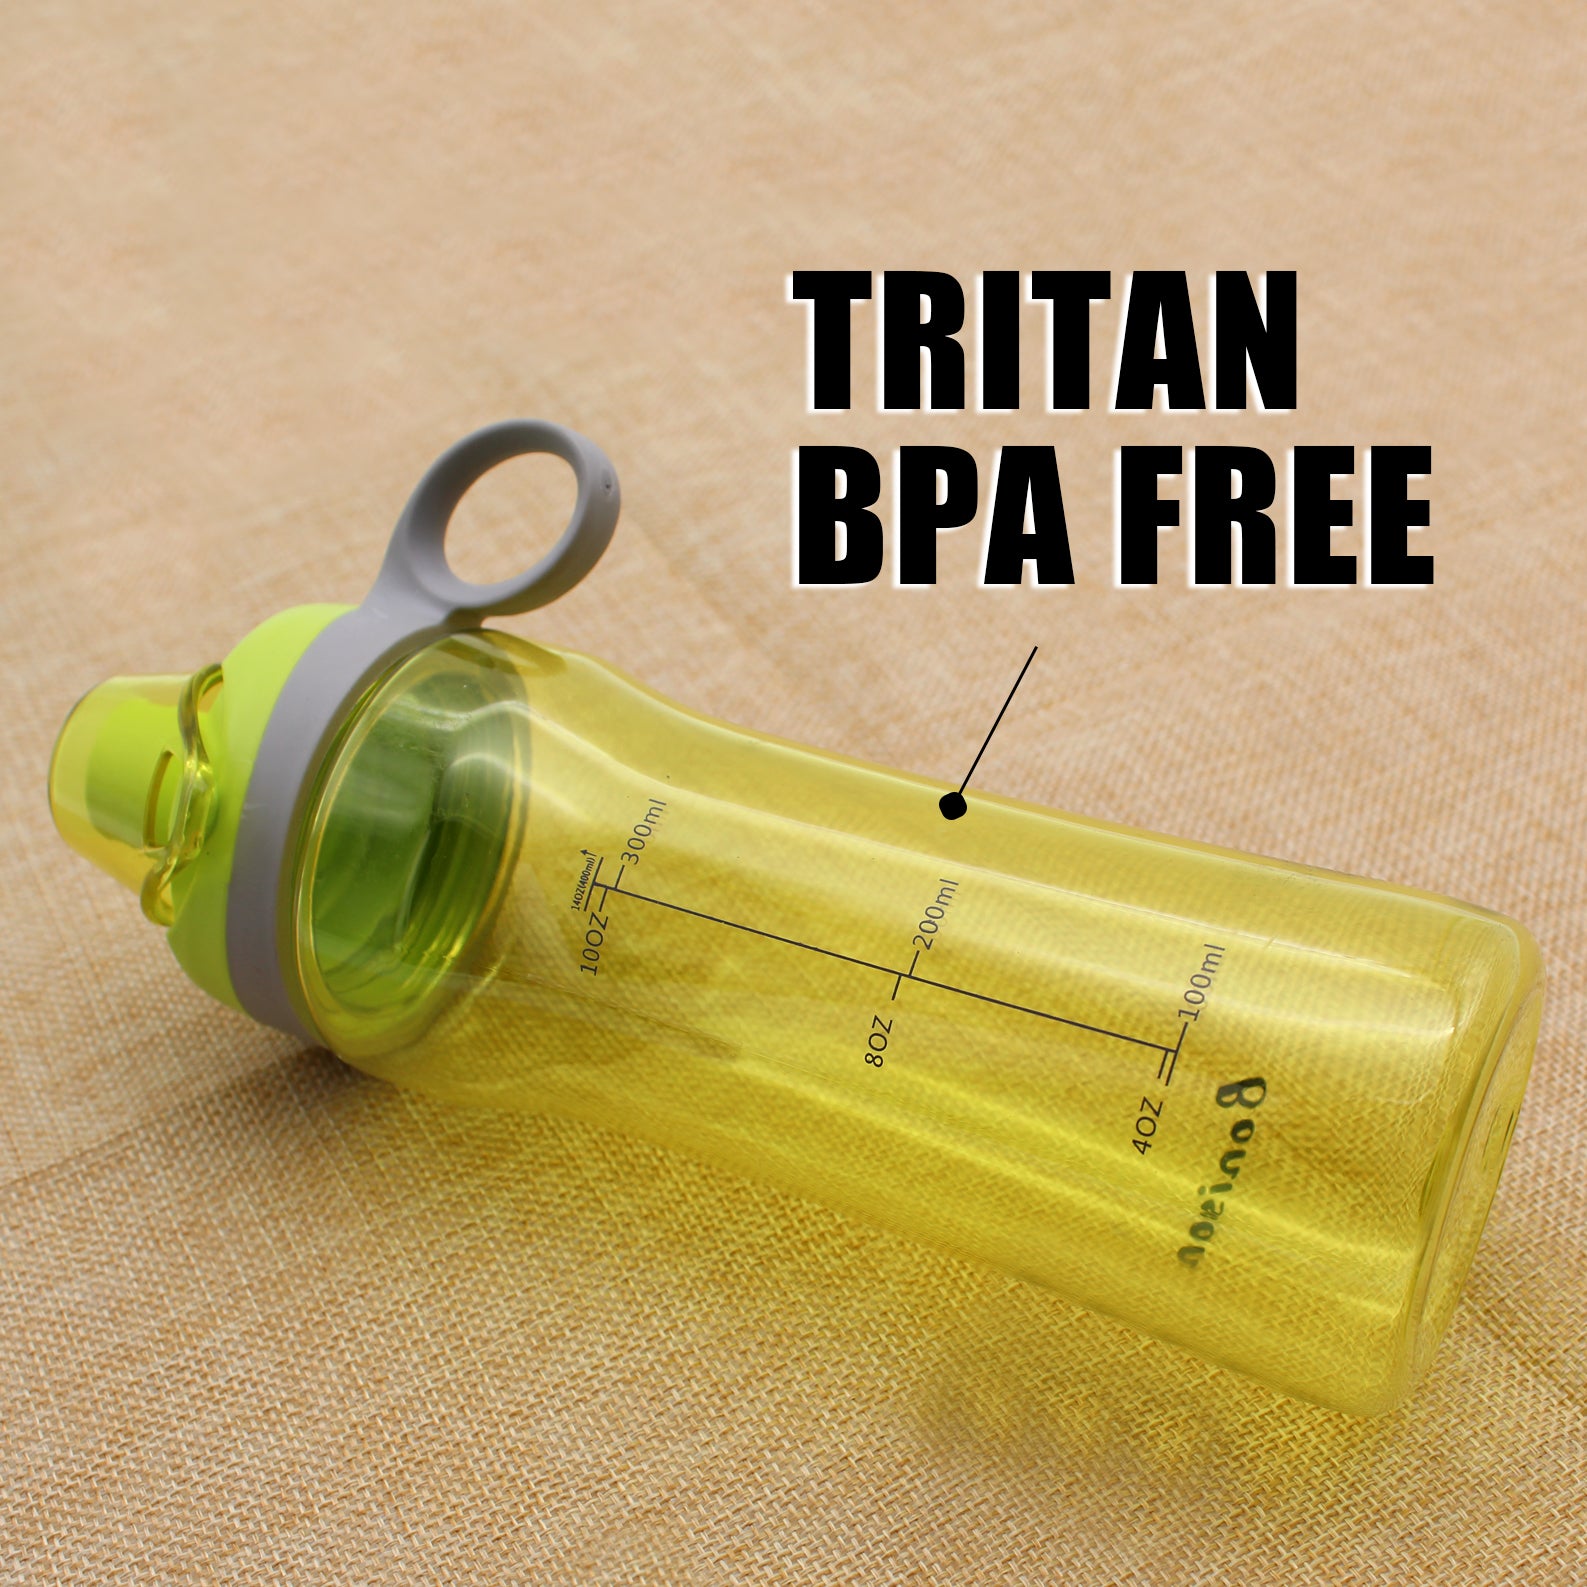 BONISON 14 OZ Kids Water Bottle With Flip Top Lid Leak Proof Bpa